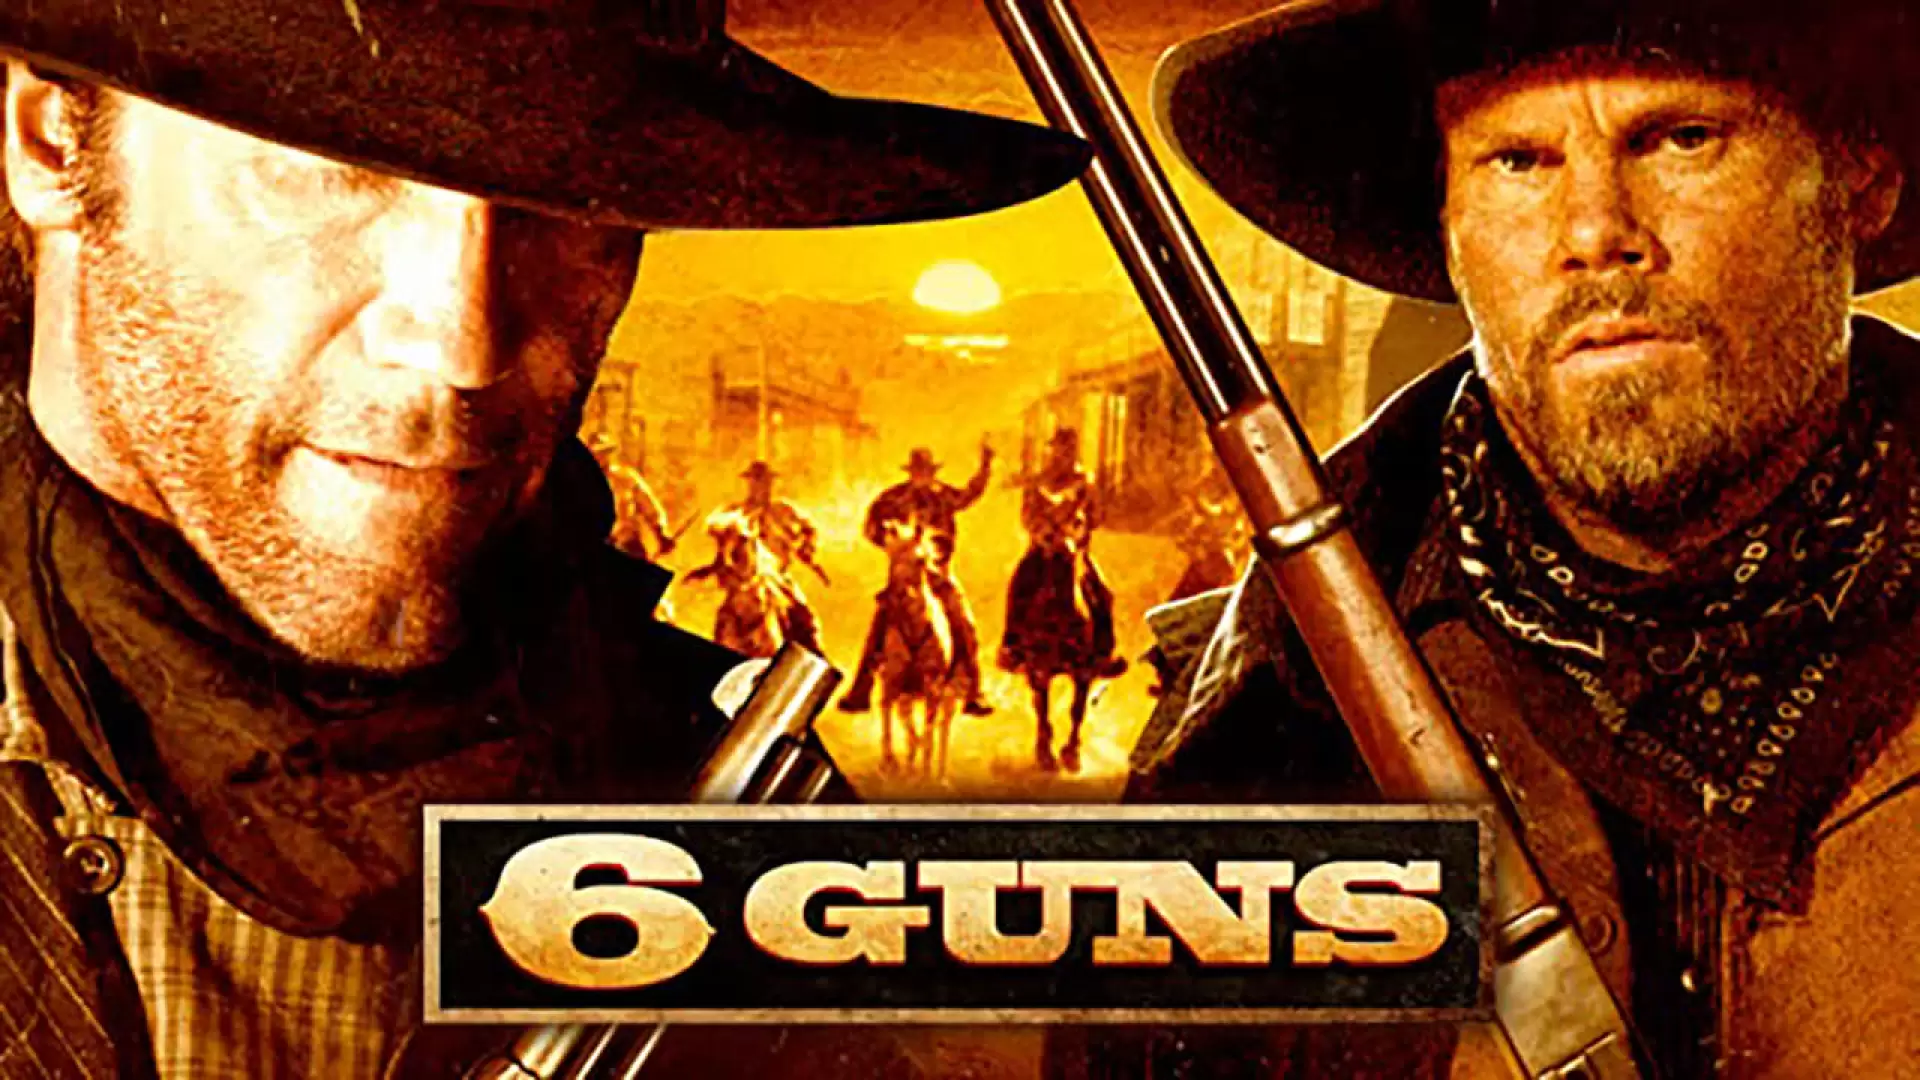 دانلود فیلم 6 Guns 2010